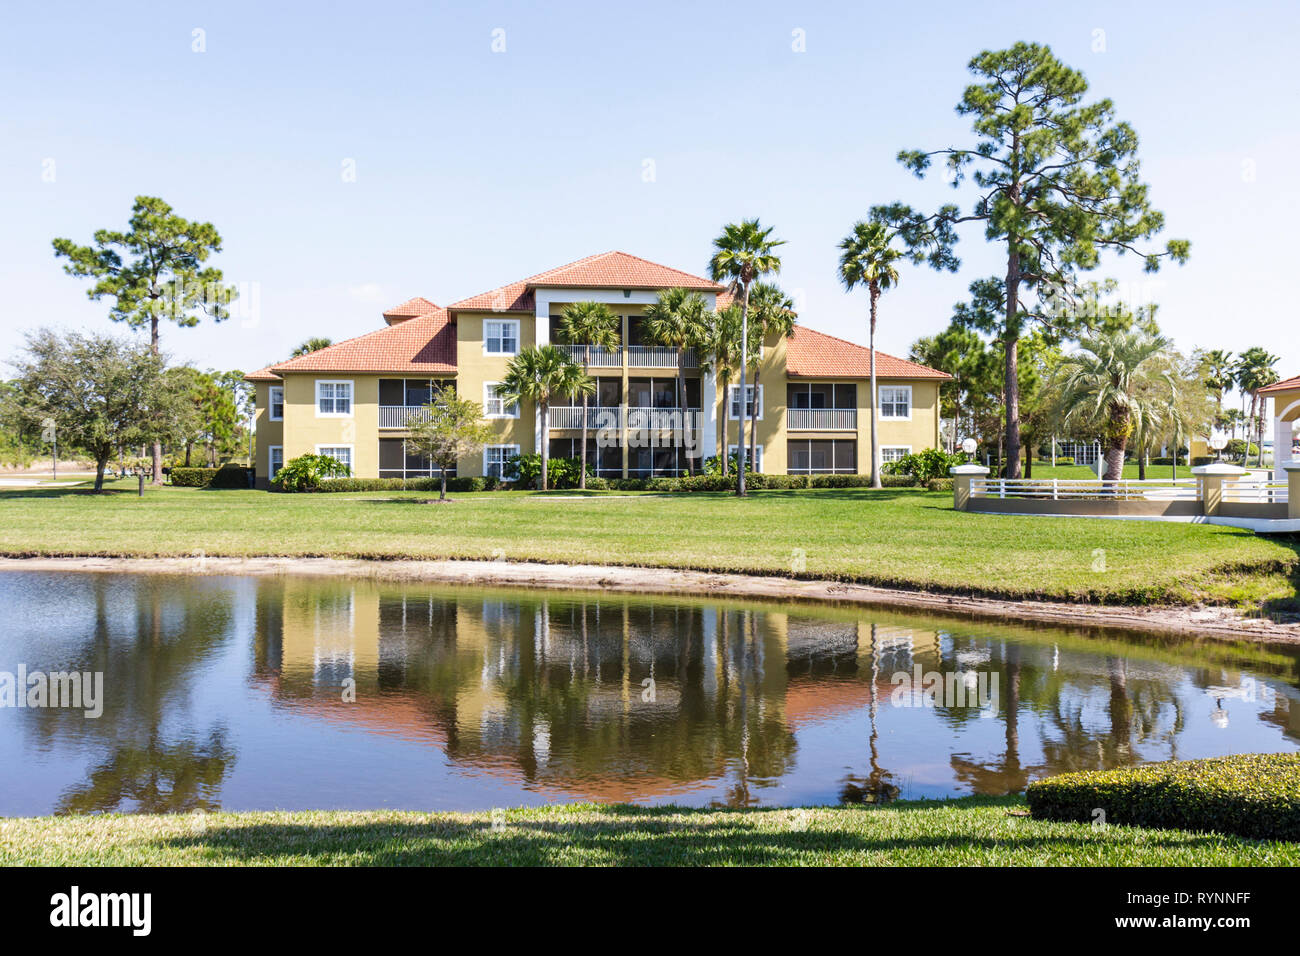 Port St. Lucie Florida,Sheraton PGA Vacation Resort,timeshare,entrée,façade,bâtiment,terrain,communauté de parcours de golf,terrains Banque D'Images